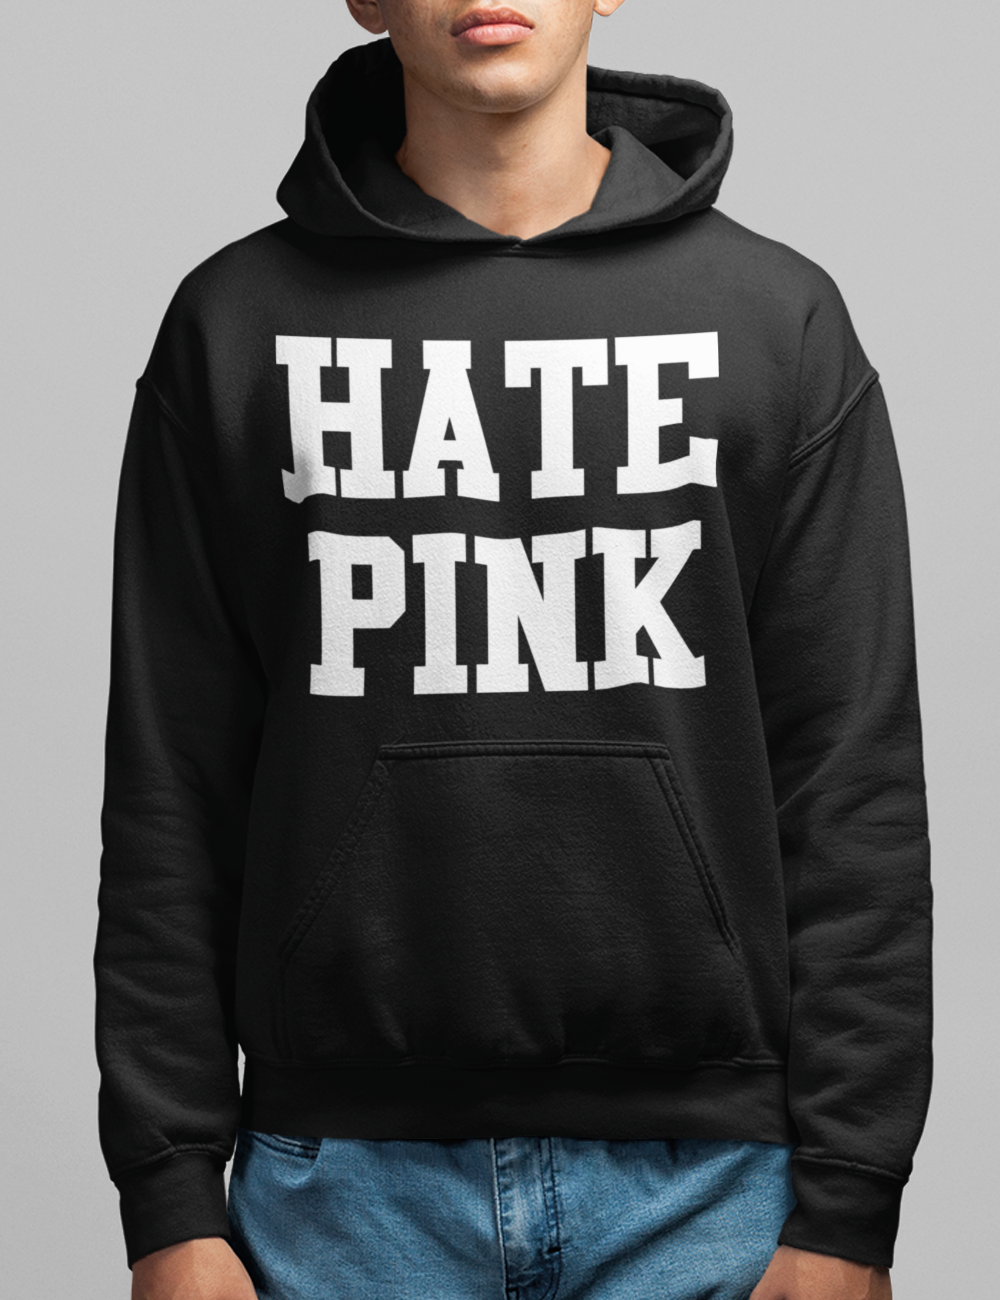 Hate Pink Hoodie OniTakai